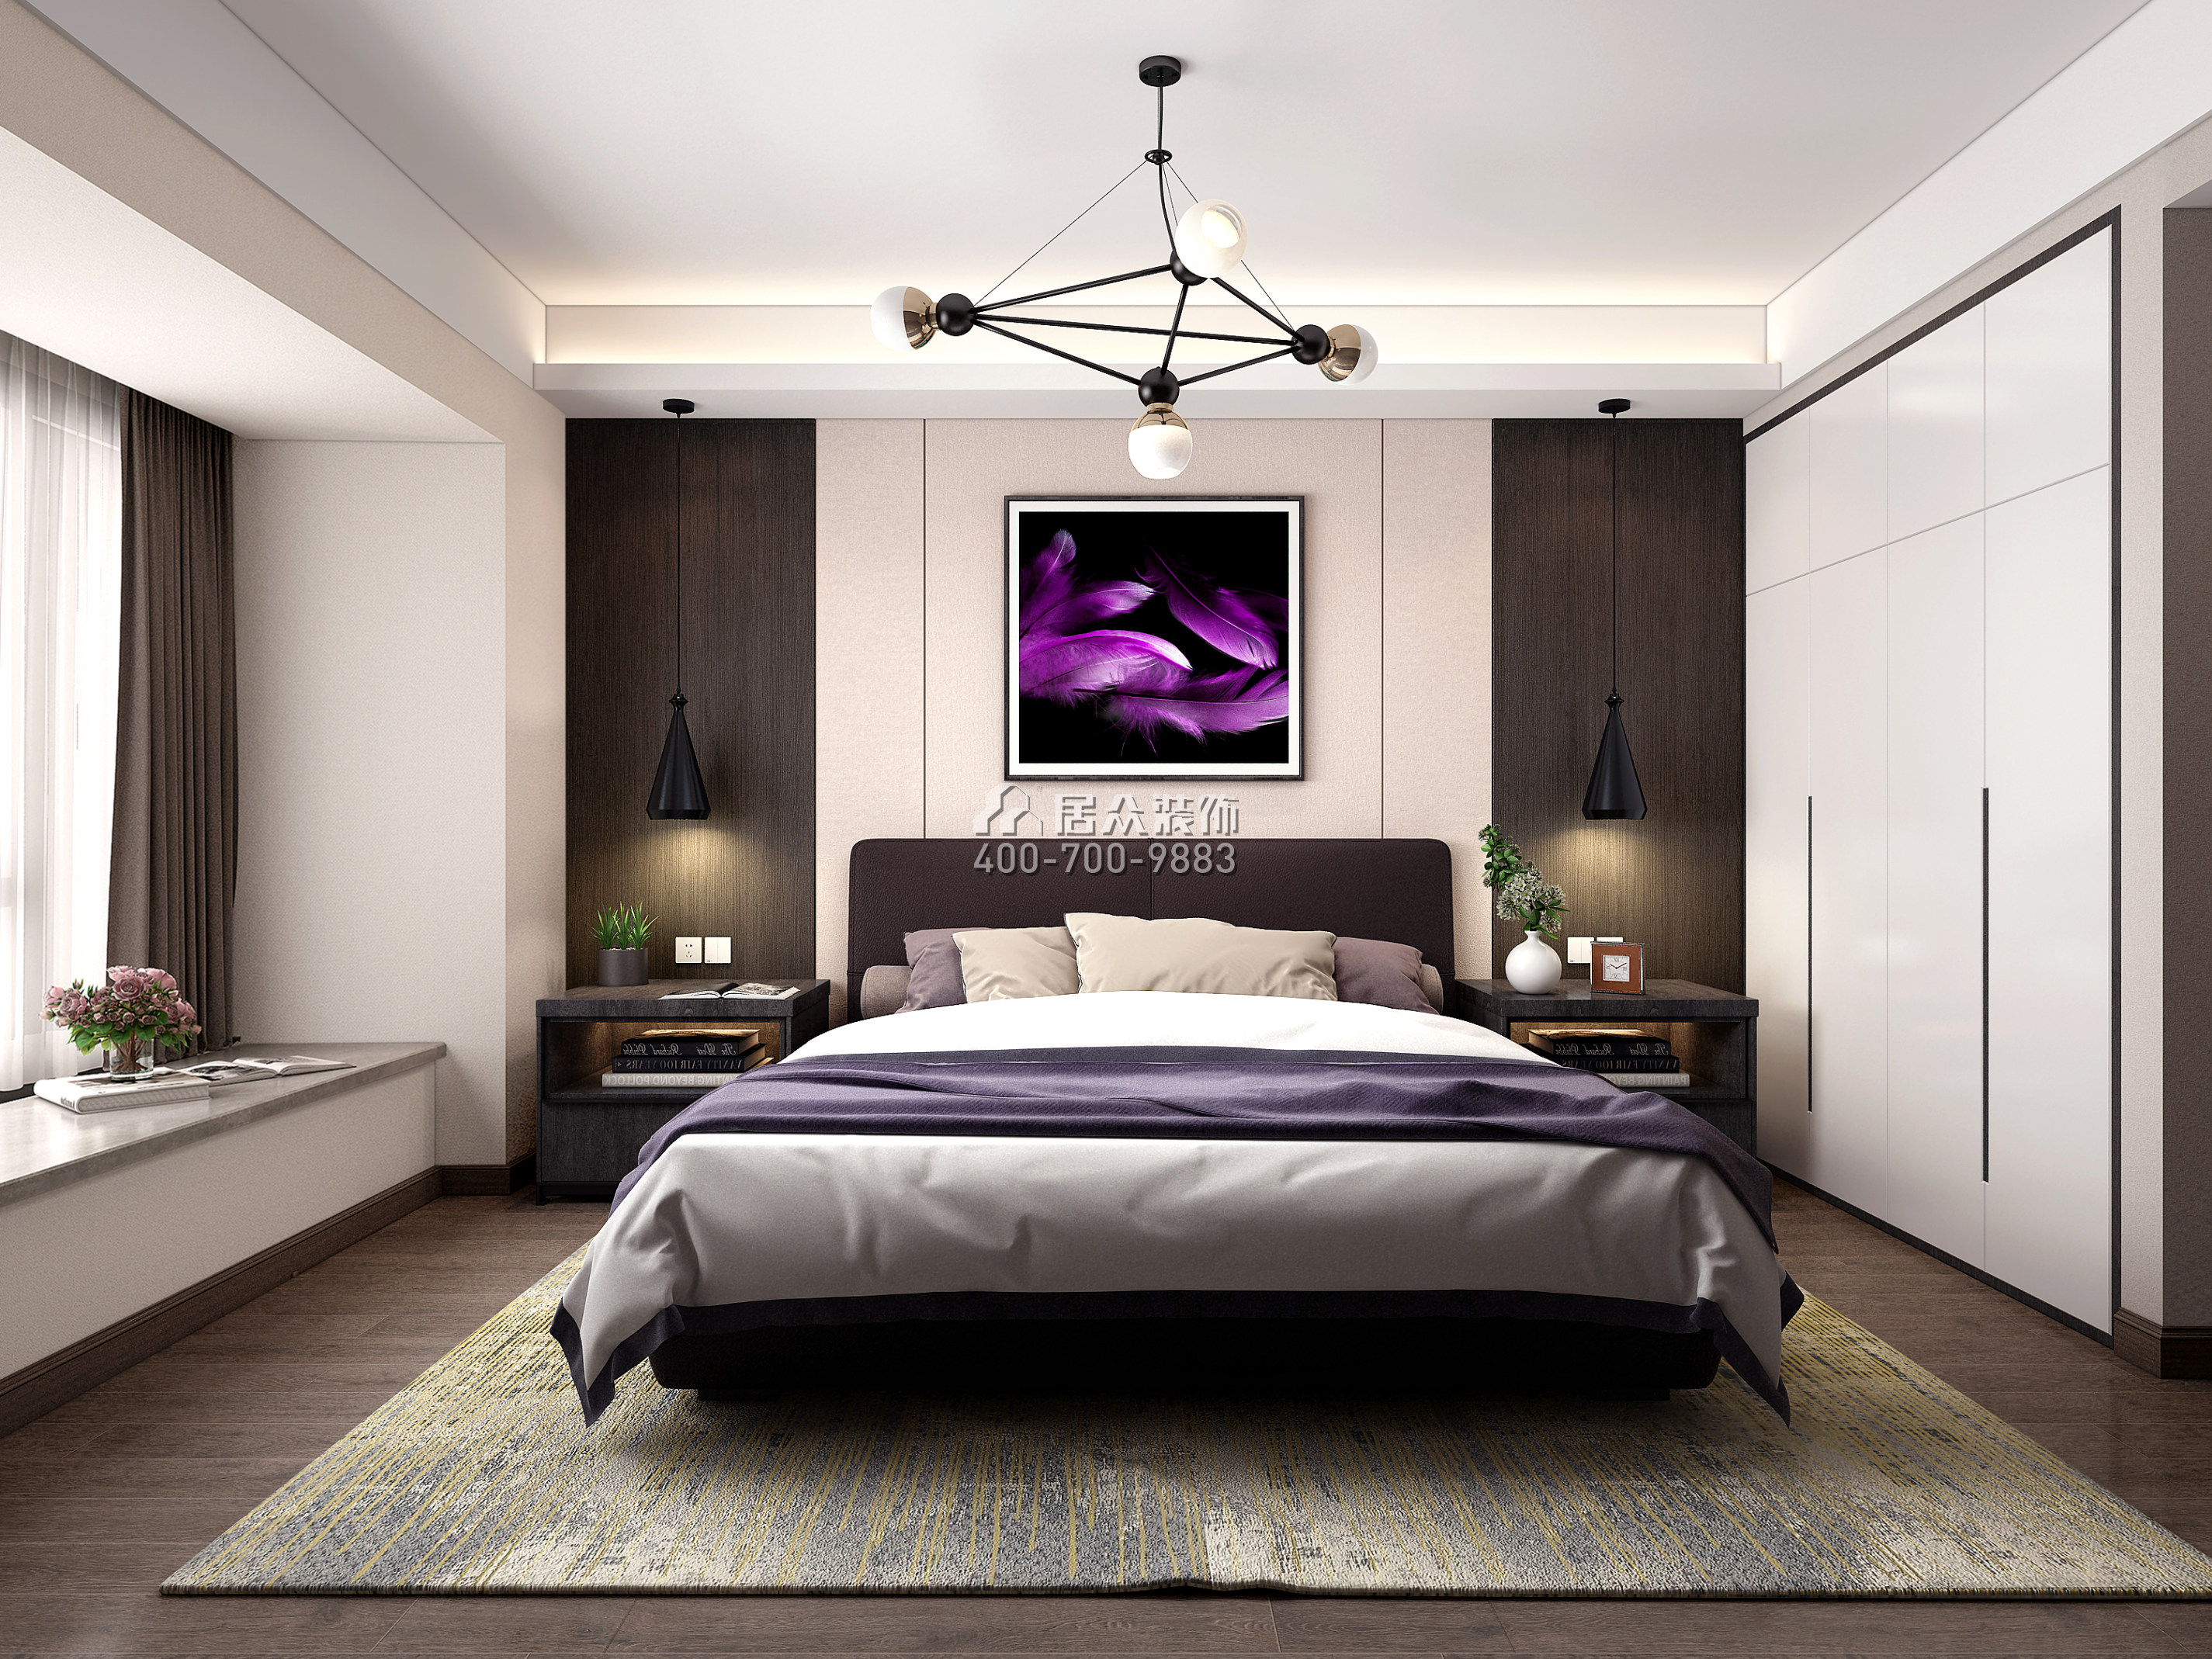 华润城润府168平方米现代简约风格平层户型卧室装修效果图